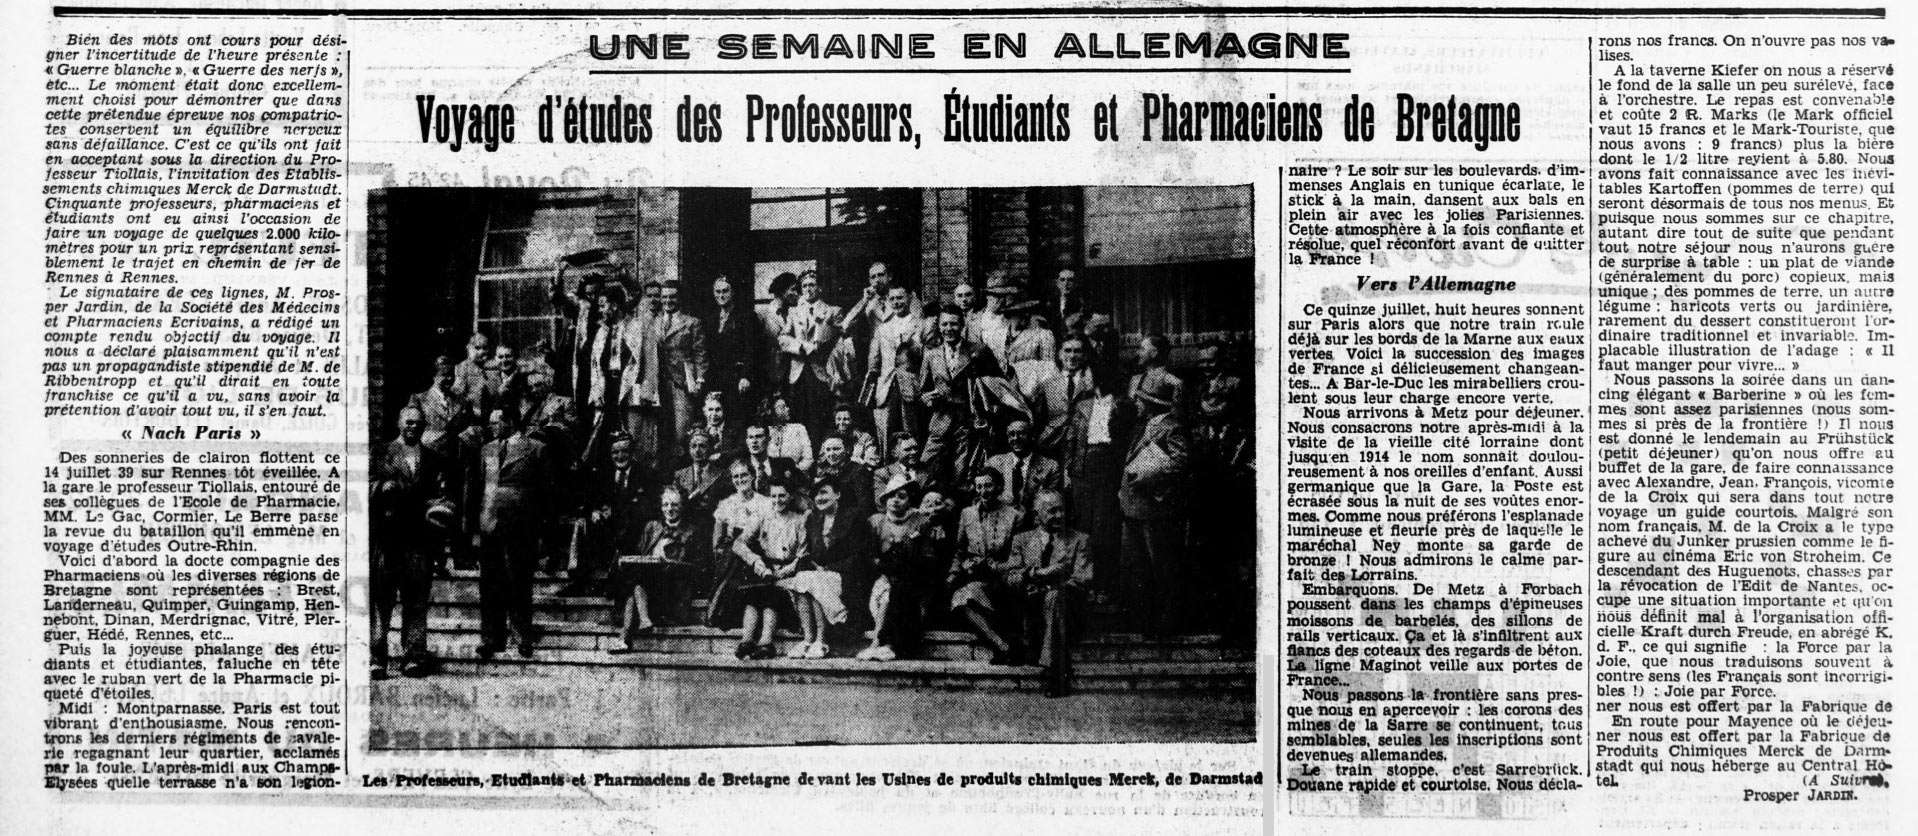 Voyages d'études d'étudiants en pharmacie de Rennes 1939